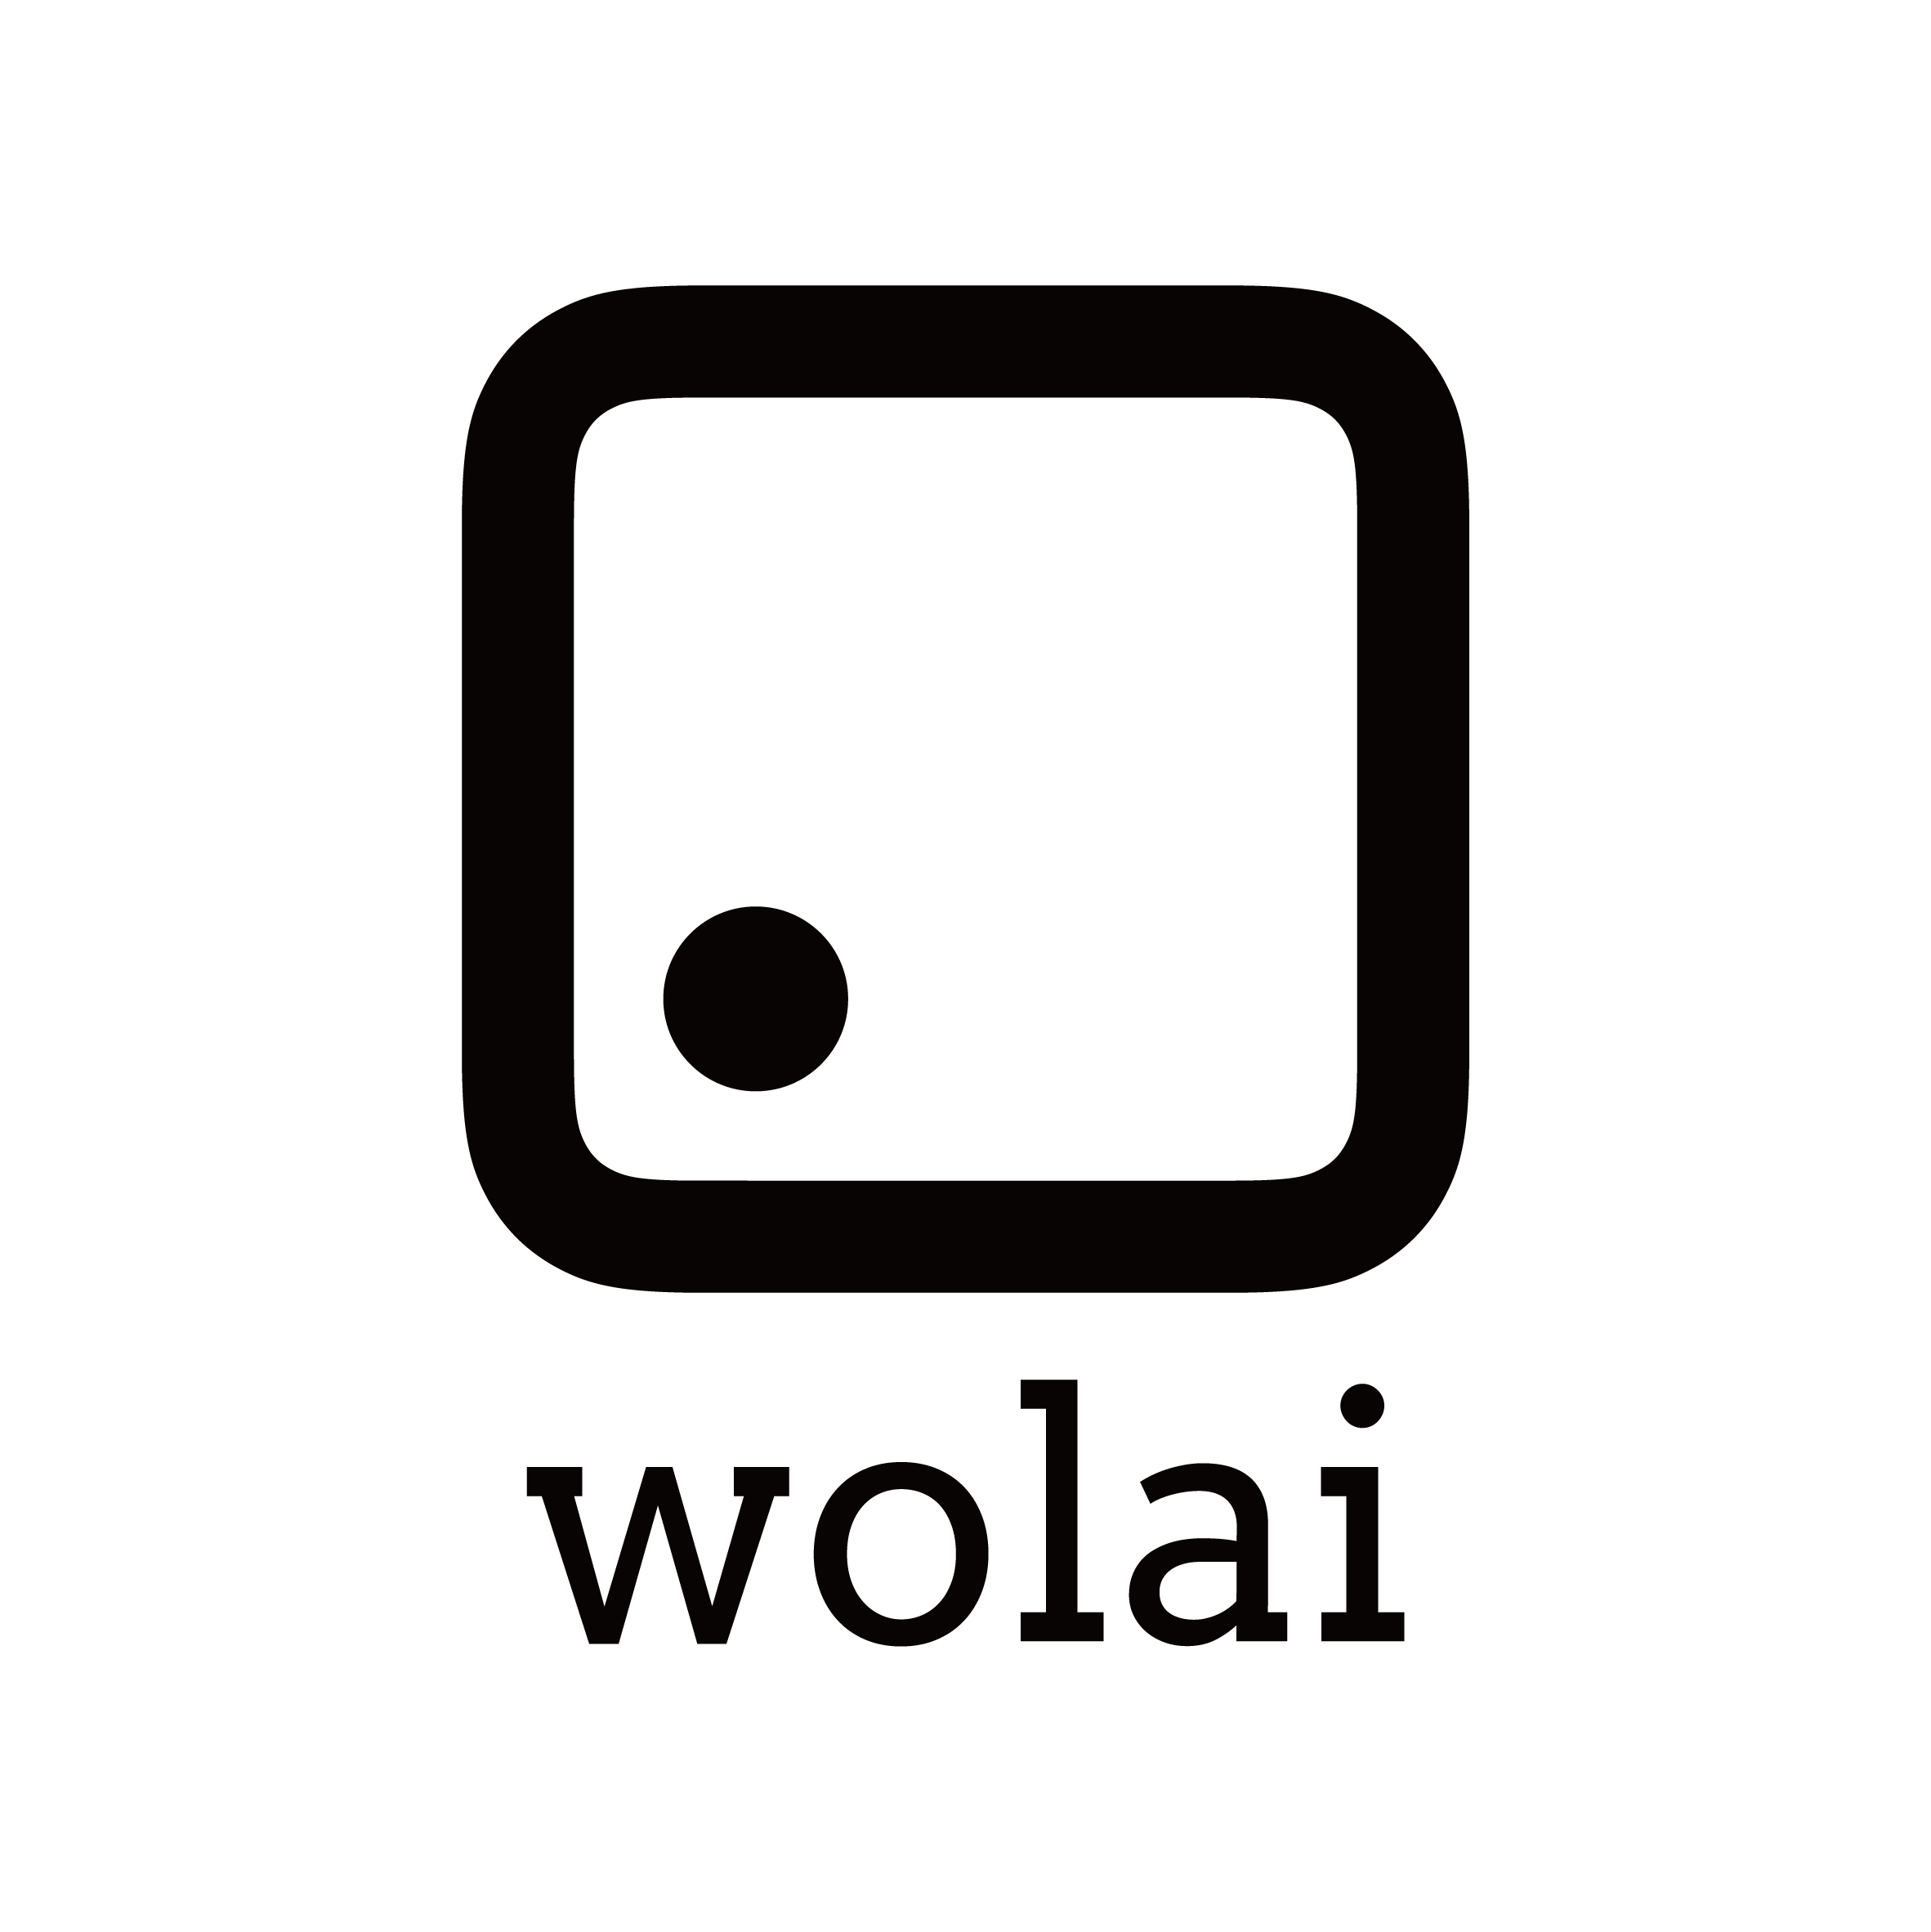 我来 wolai - 不仅仅是未来的云端协作平台与个人笔记